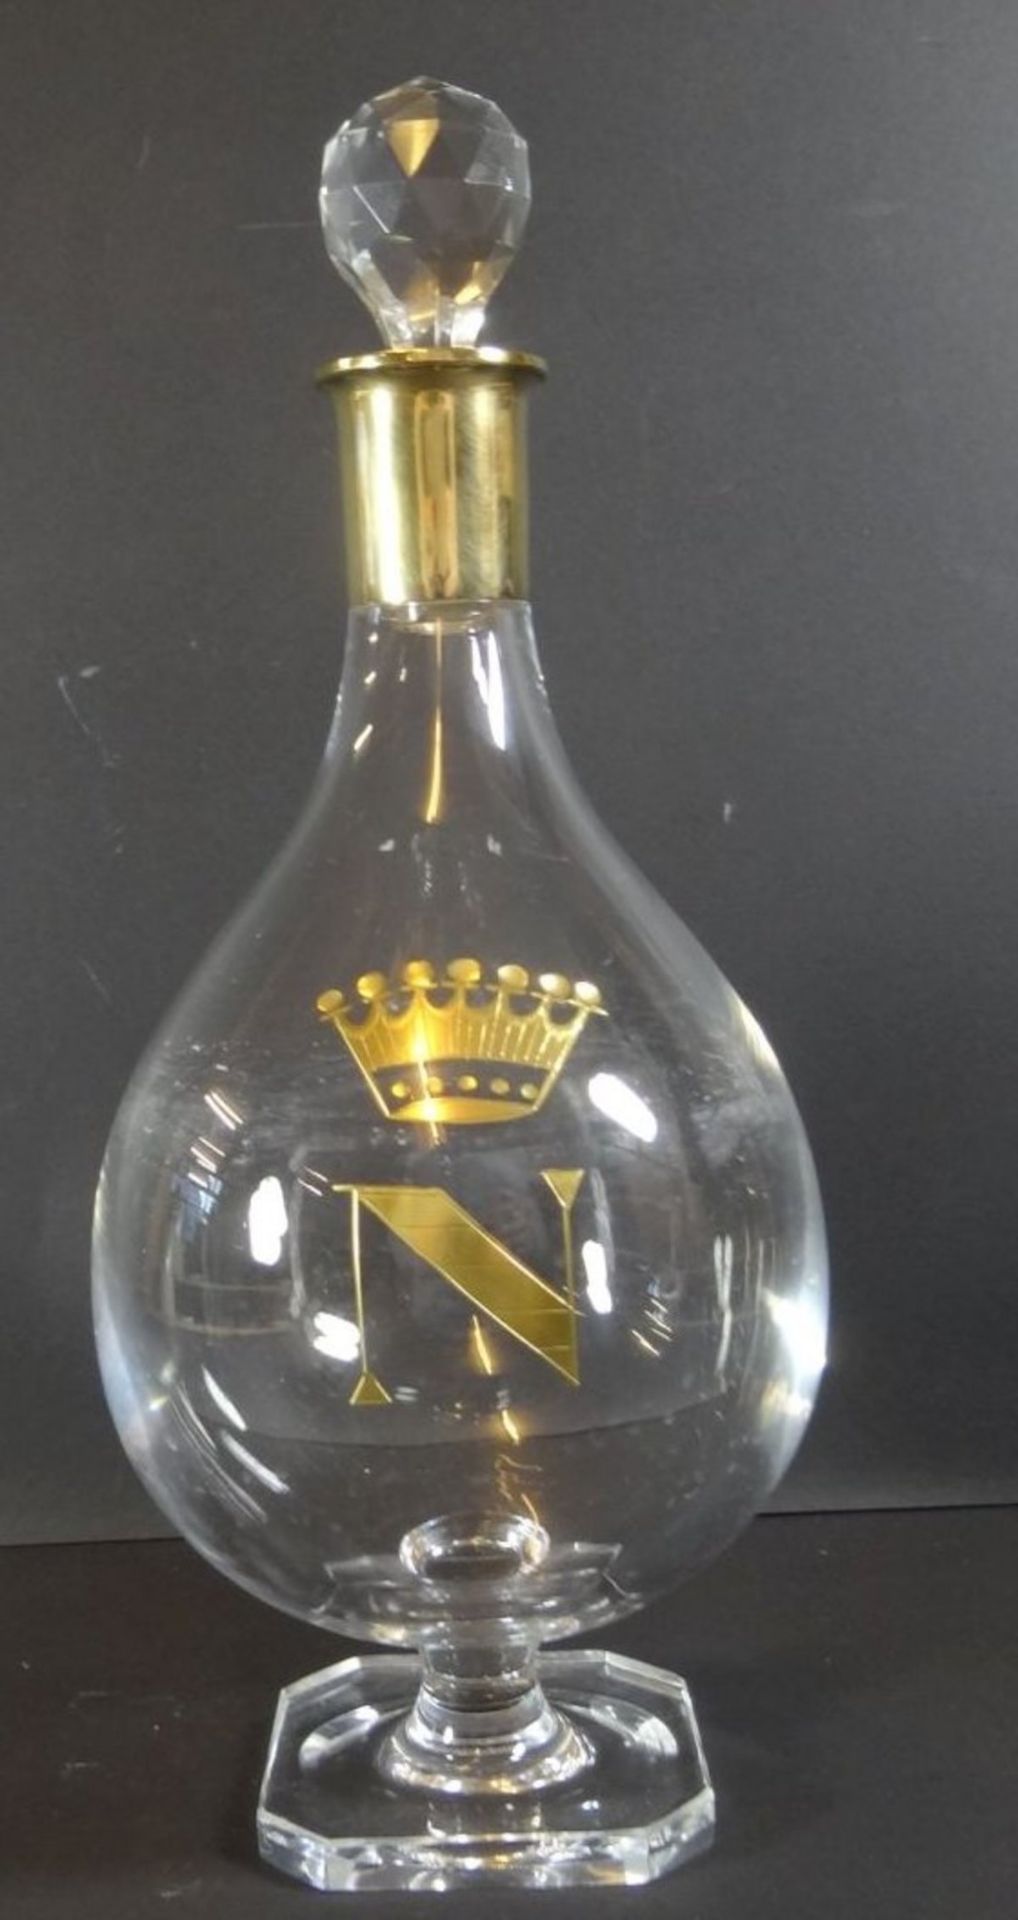 Kristall-Karaffe auf Stand, Silberhals-925-, vergoldet, auf Stand, H-31 cm, Krone mit "N", Stöpsel - Image 4 of 7